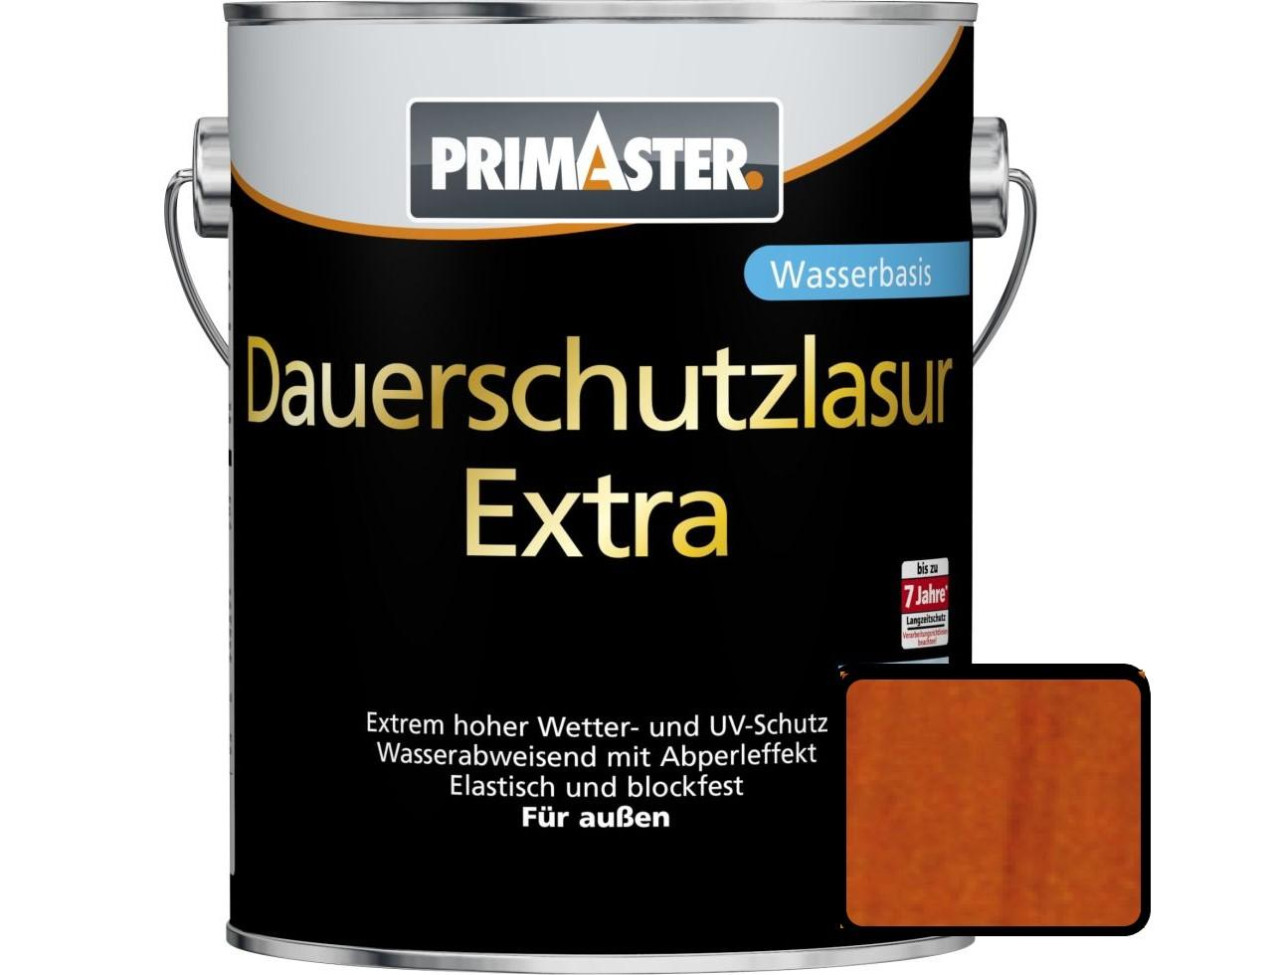 Primaster Dauerschutzlasur Extra 5 L mahagoni von Primaster